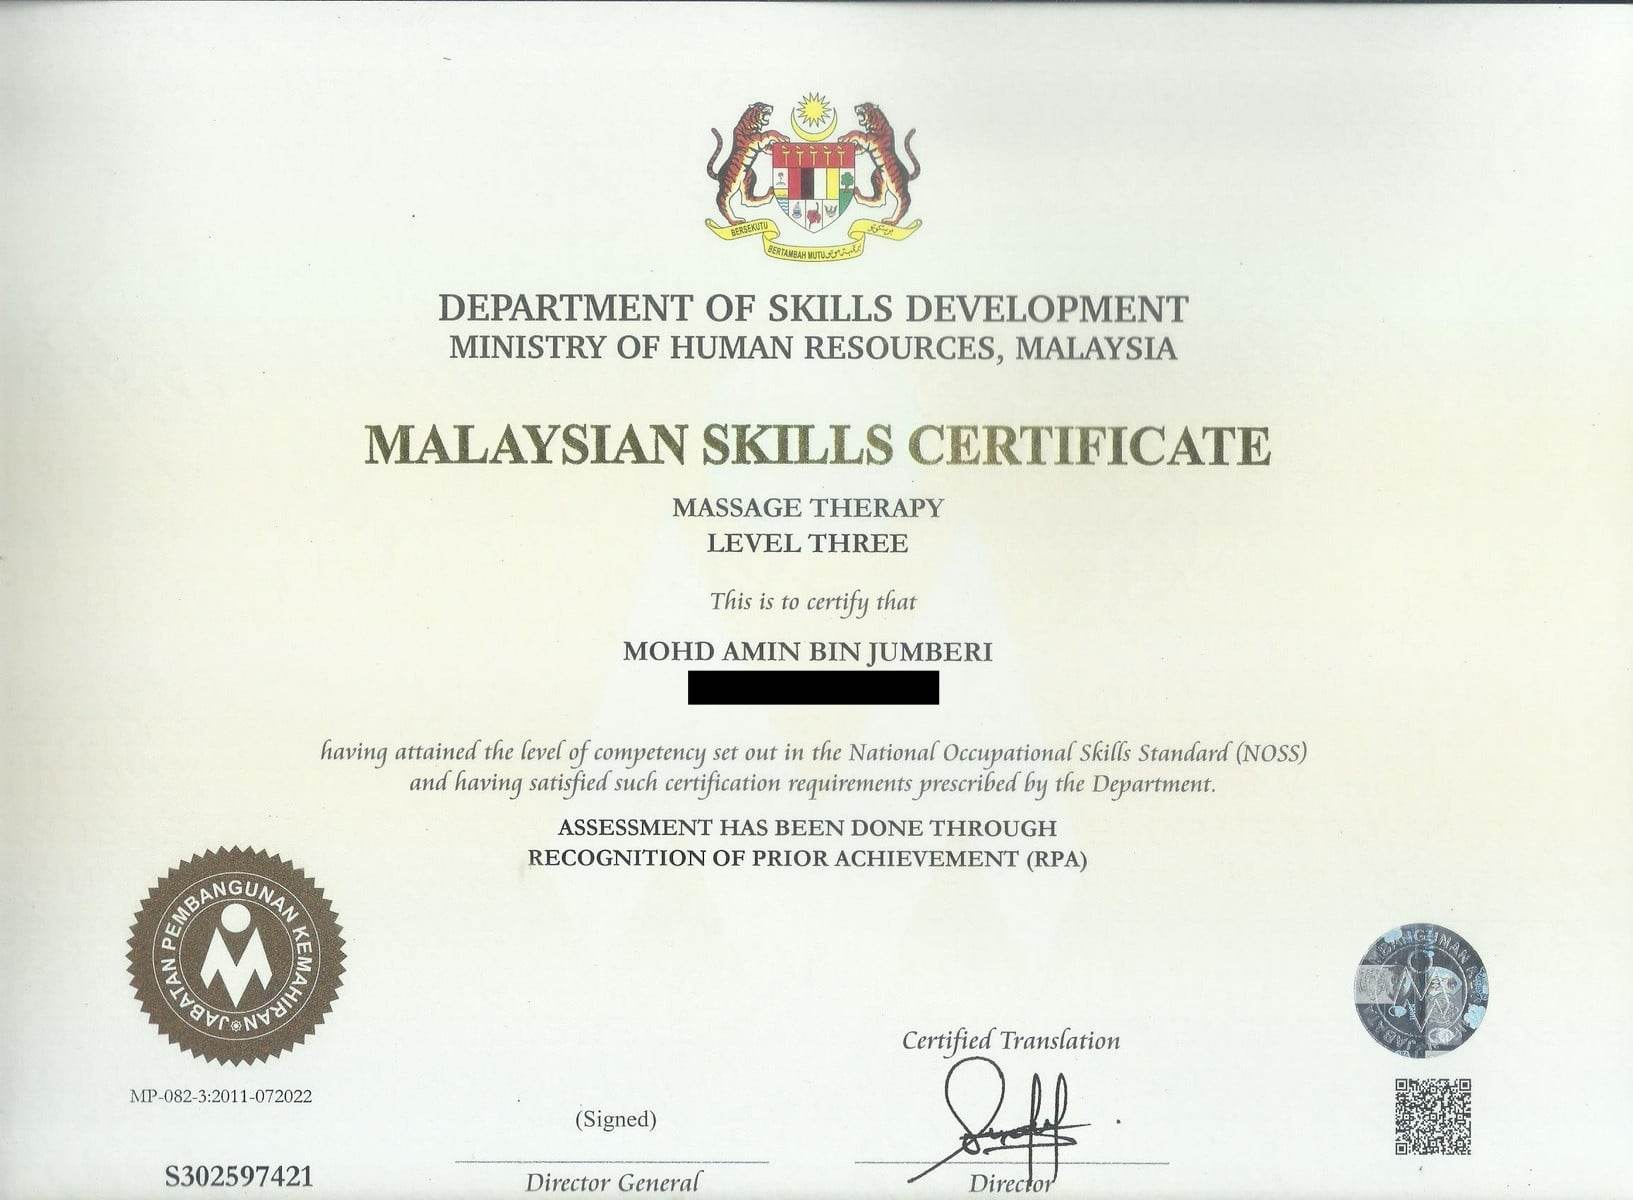 Malaysian Skills Certificate, Massage Therapy